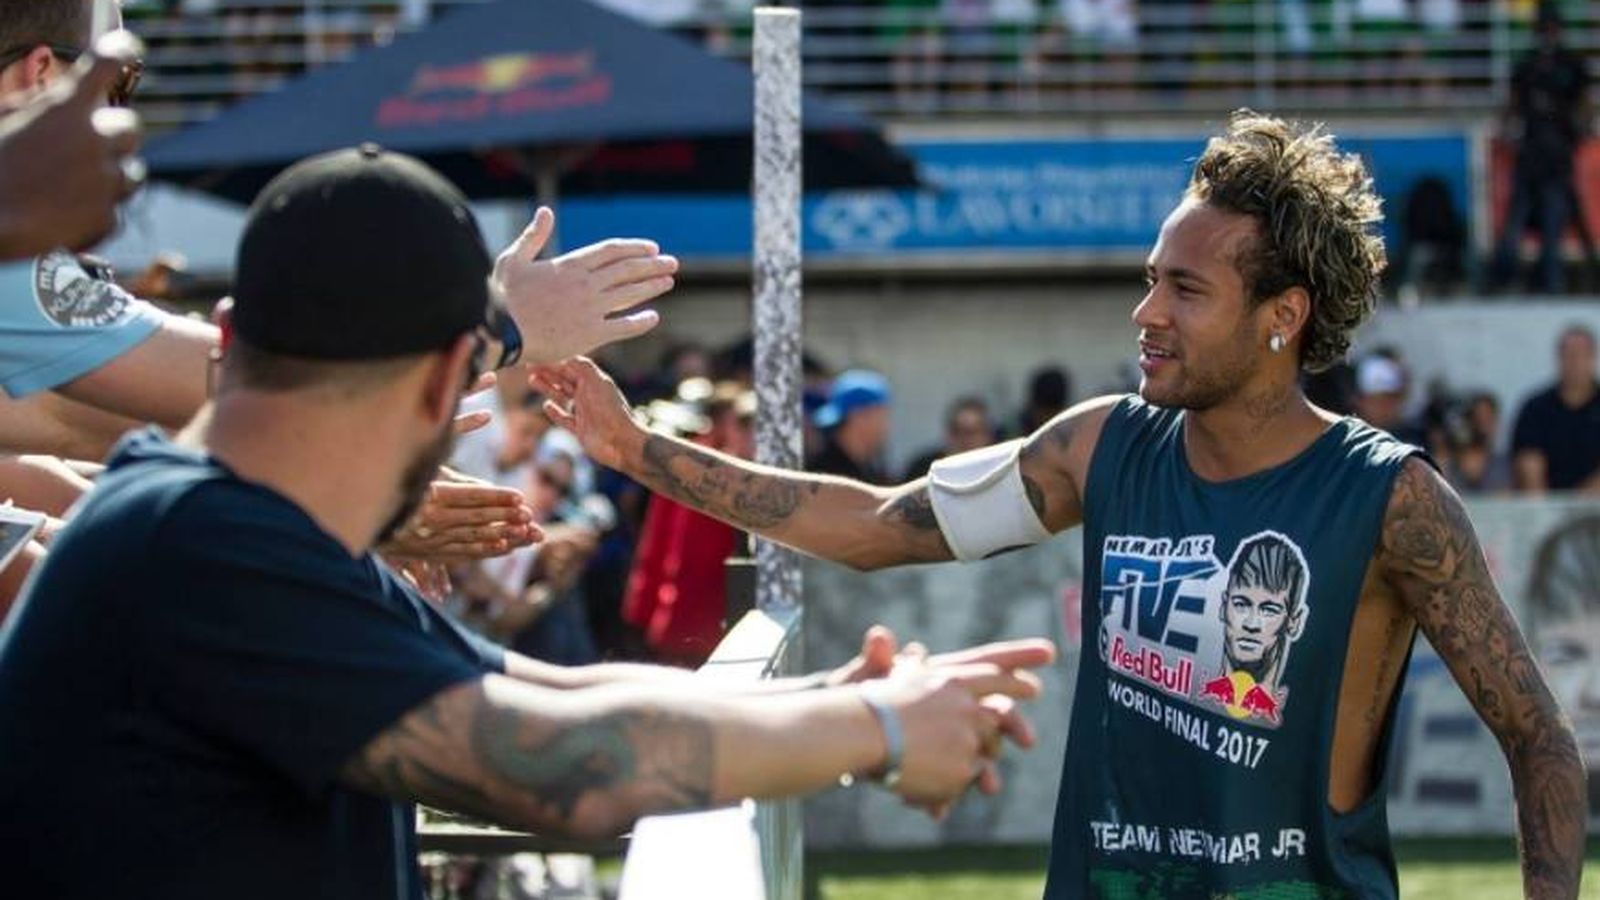 Foto: Neymar, durante un evento promocional de su torneo.